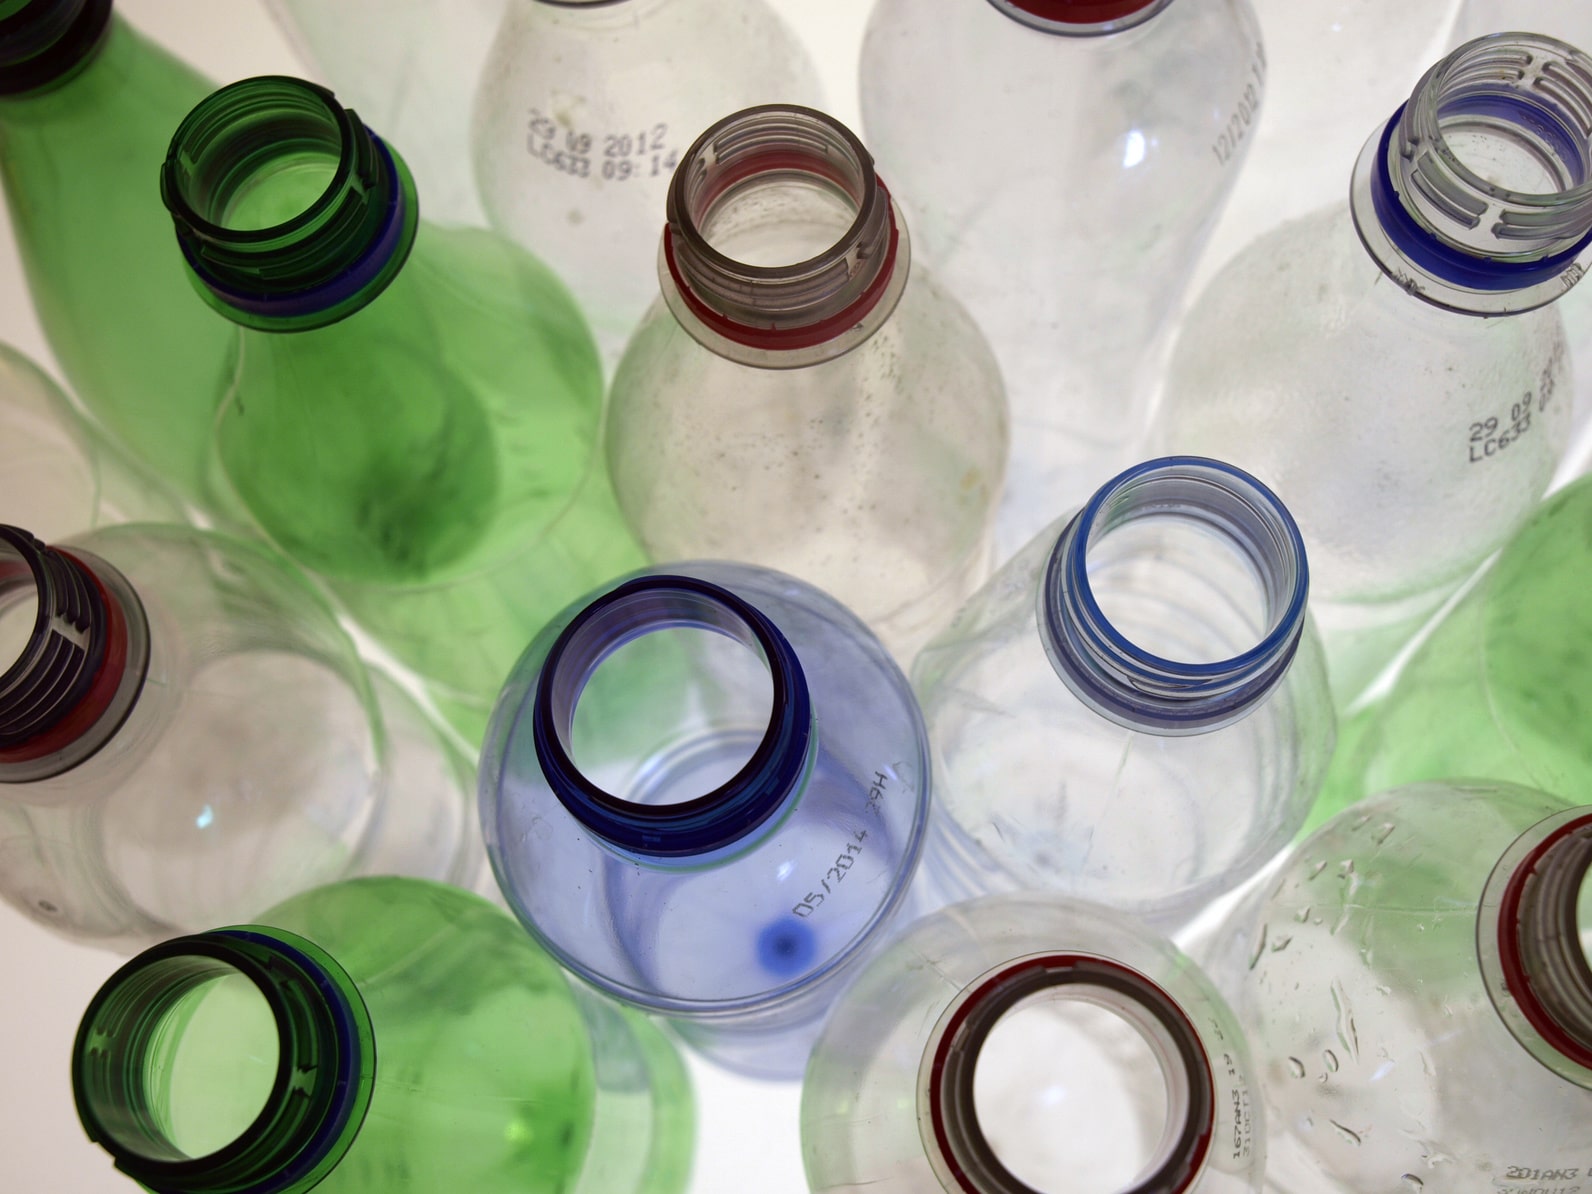 Leere Plastikflaschen – die Bundesumweltministerin will diese künftig vermeiden. (Foto: Fotolia/Alterfalter)